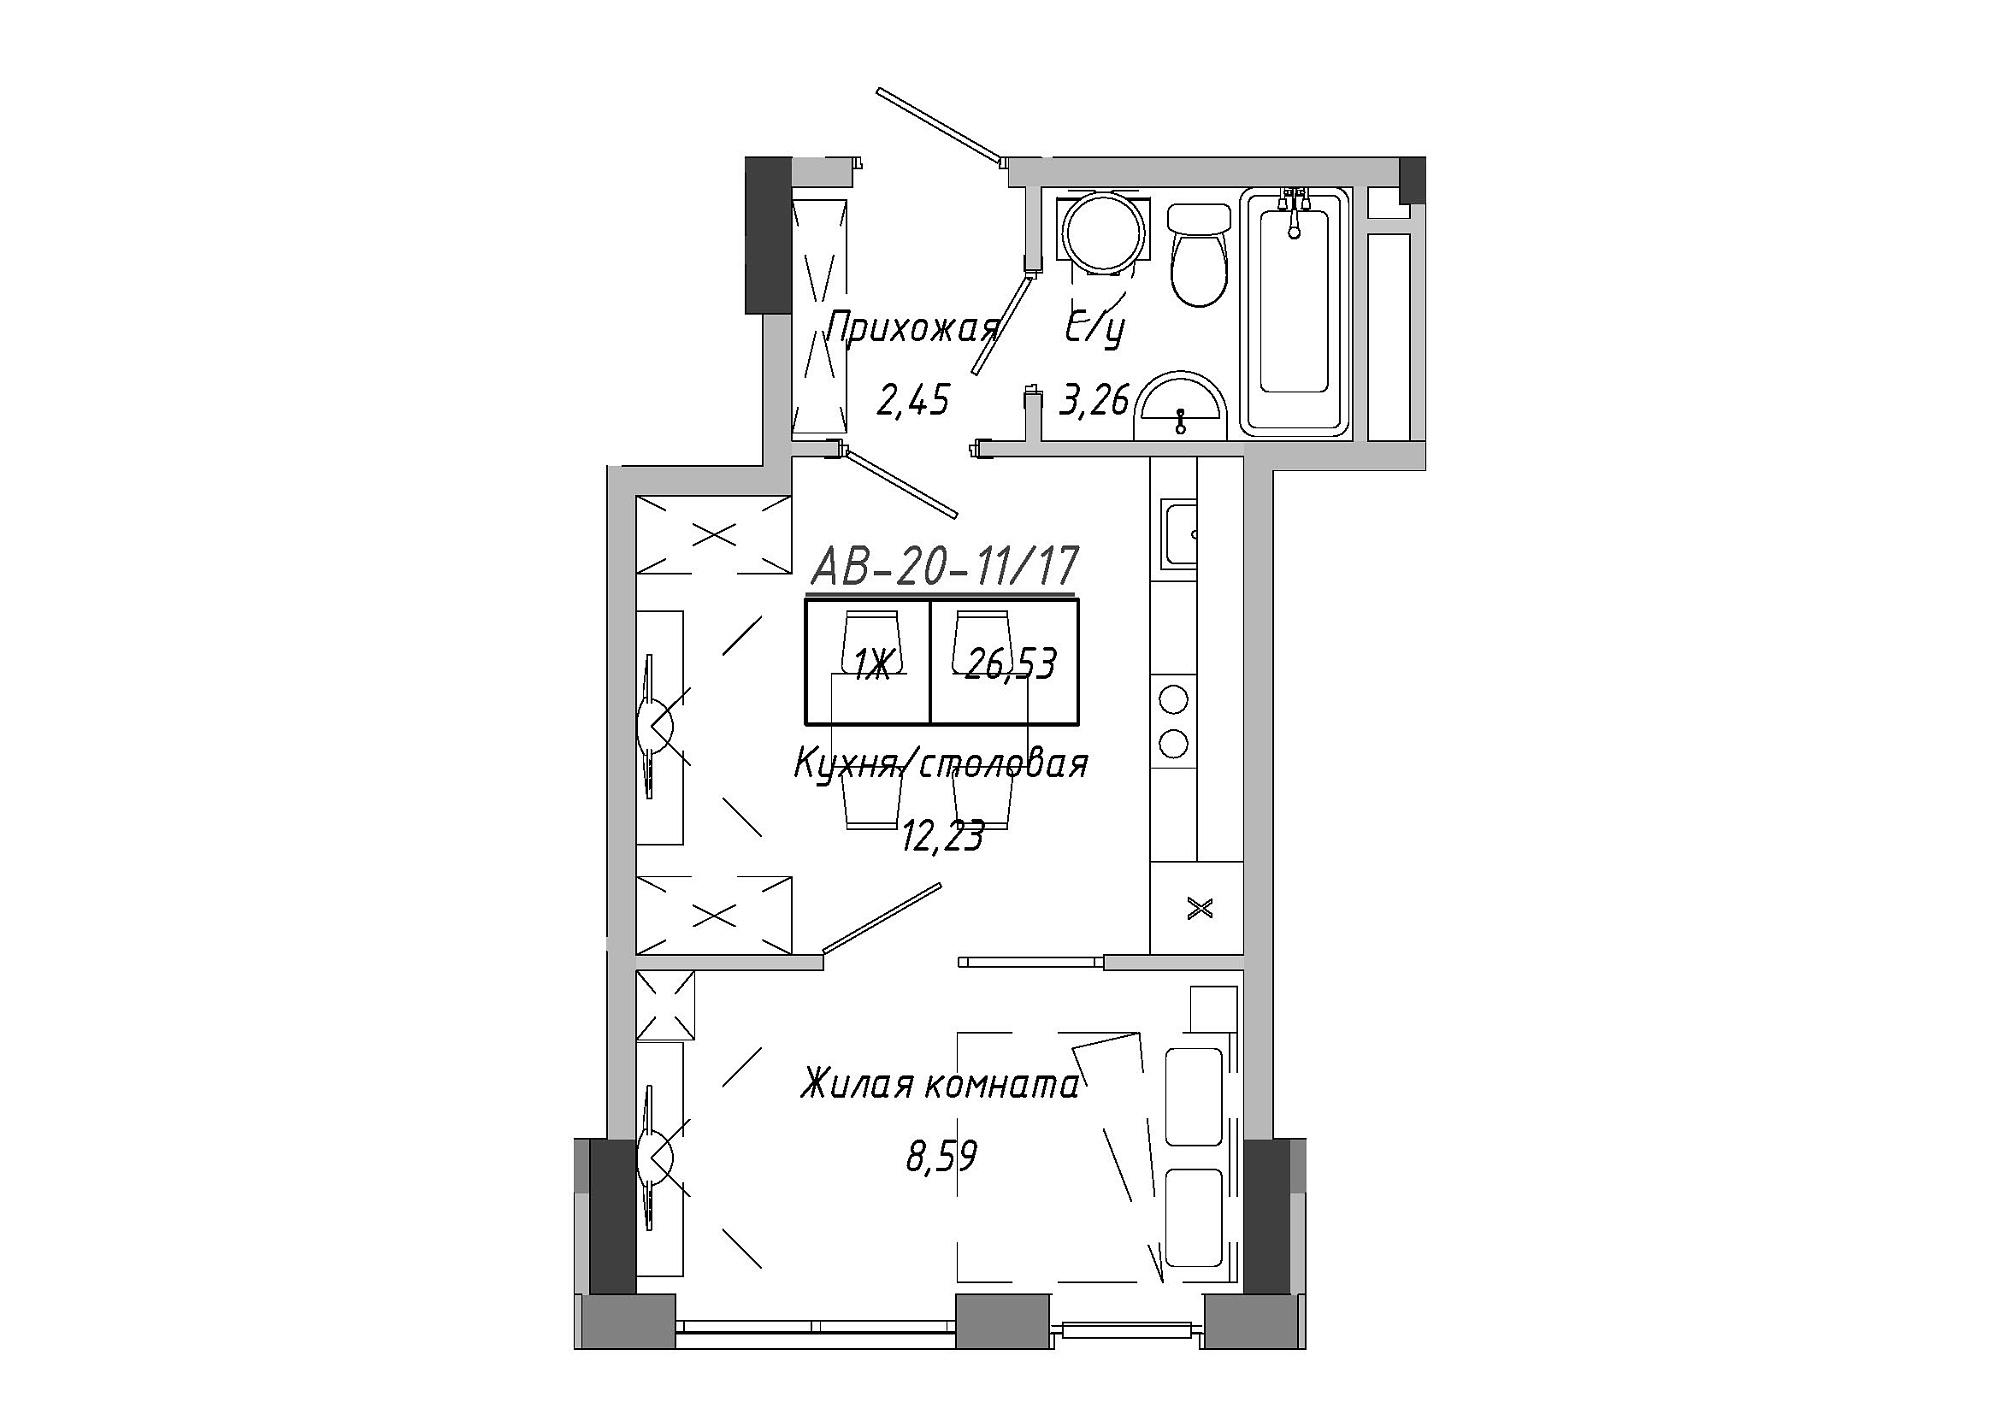 Планировка 1-к квартира площей 26.98м2, AB-20-11/00017.